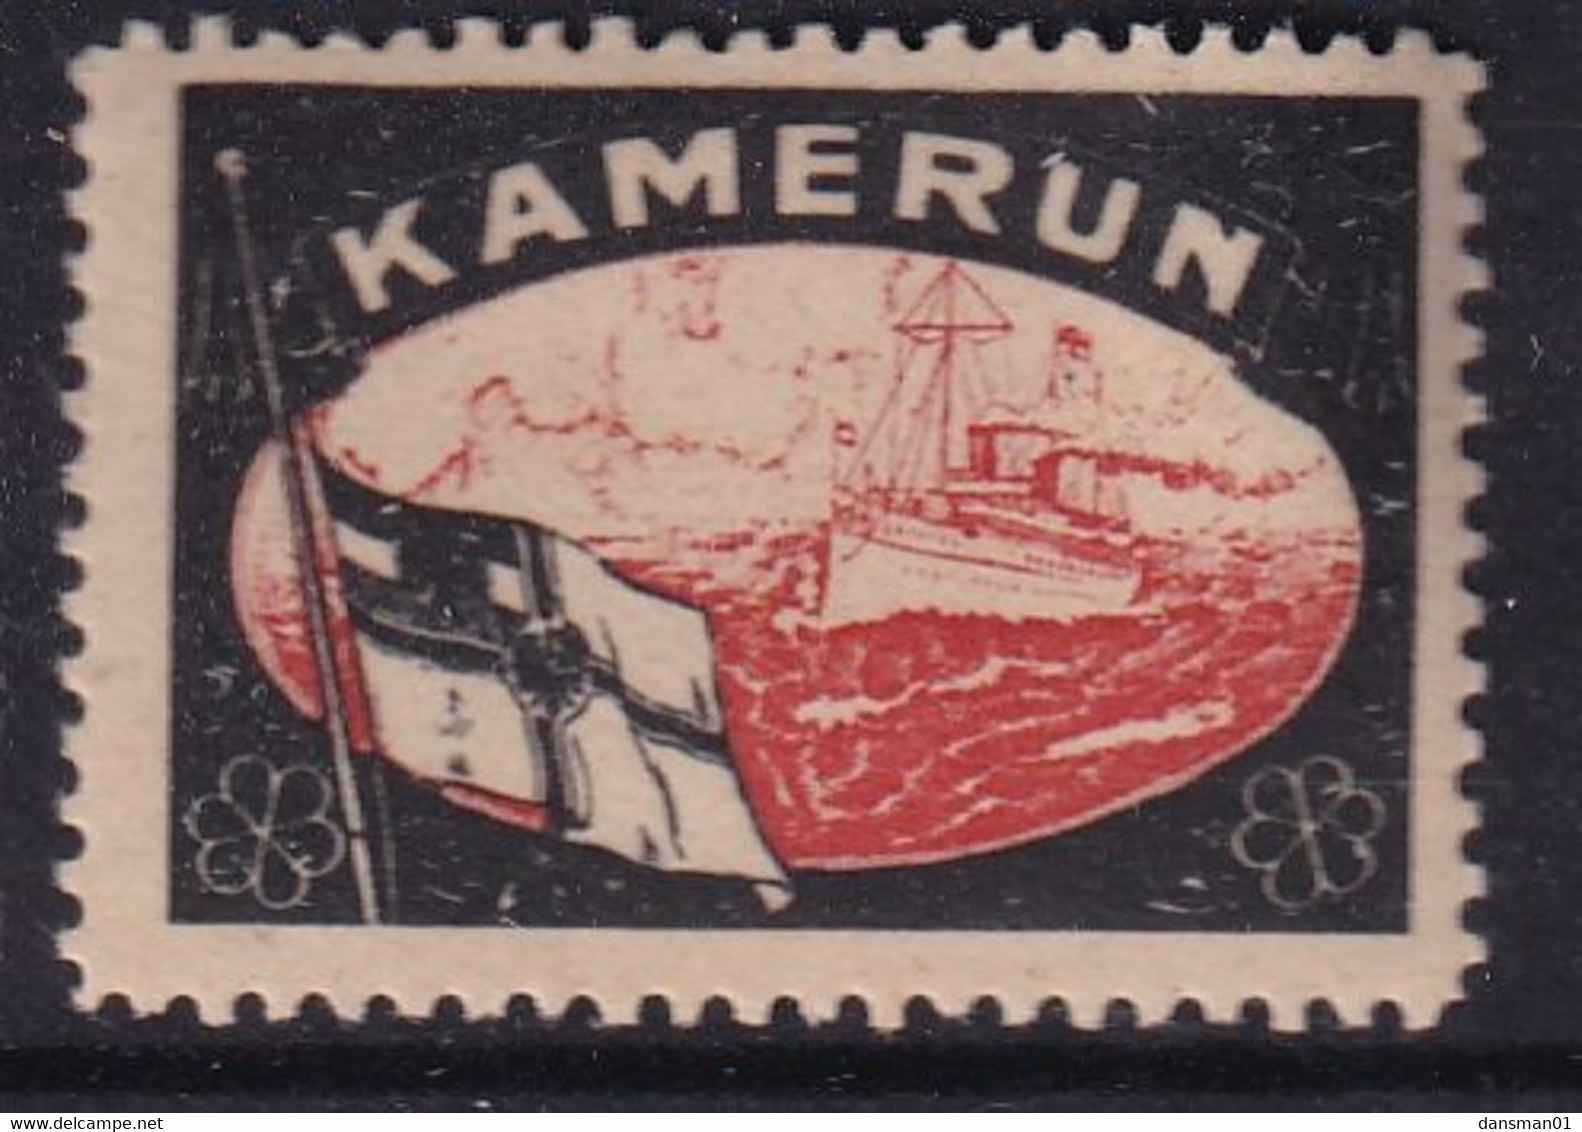 GERMANY 1920 Lost Territories Label Kamerun Mint Hinged - Cinderellas